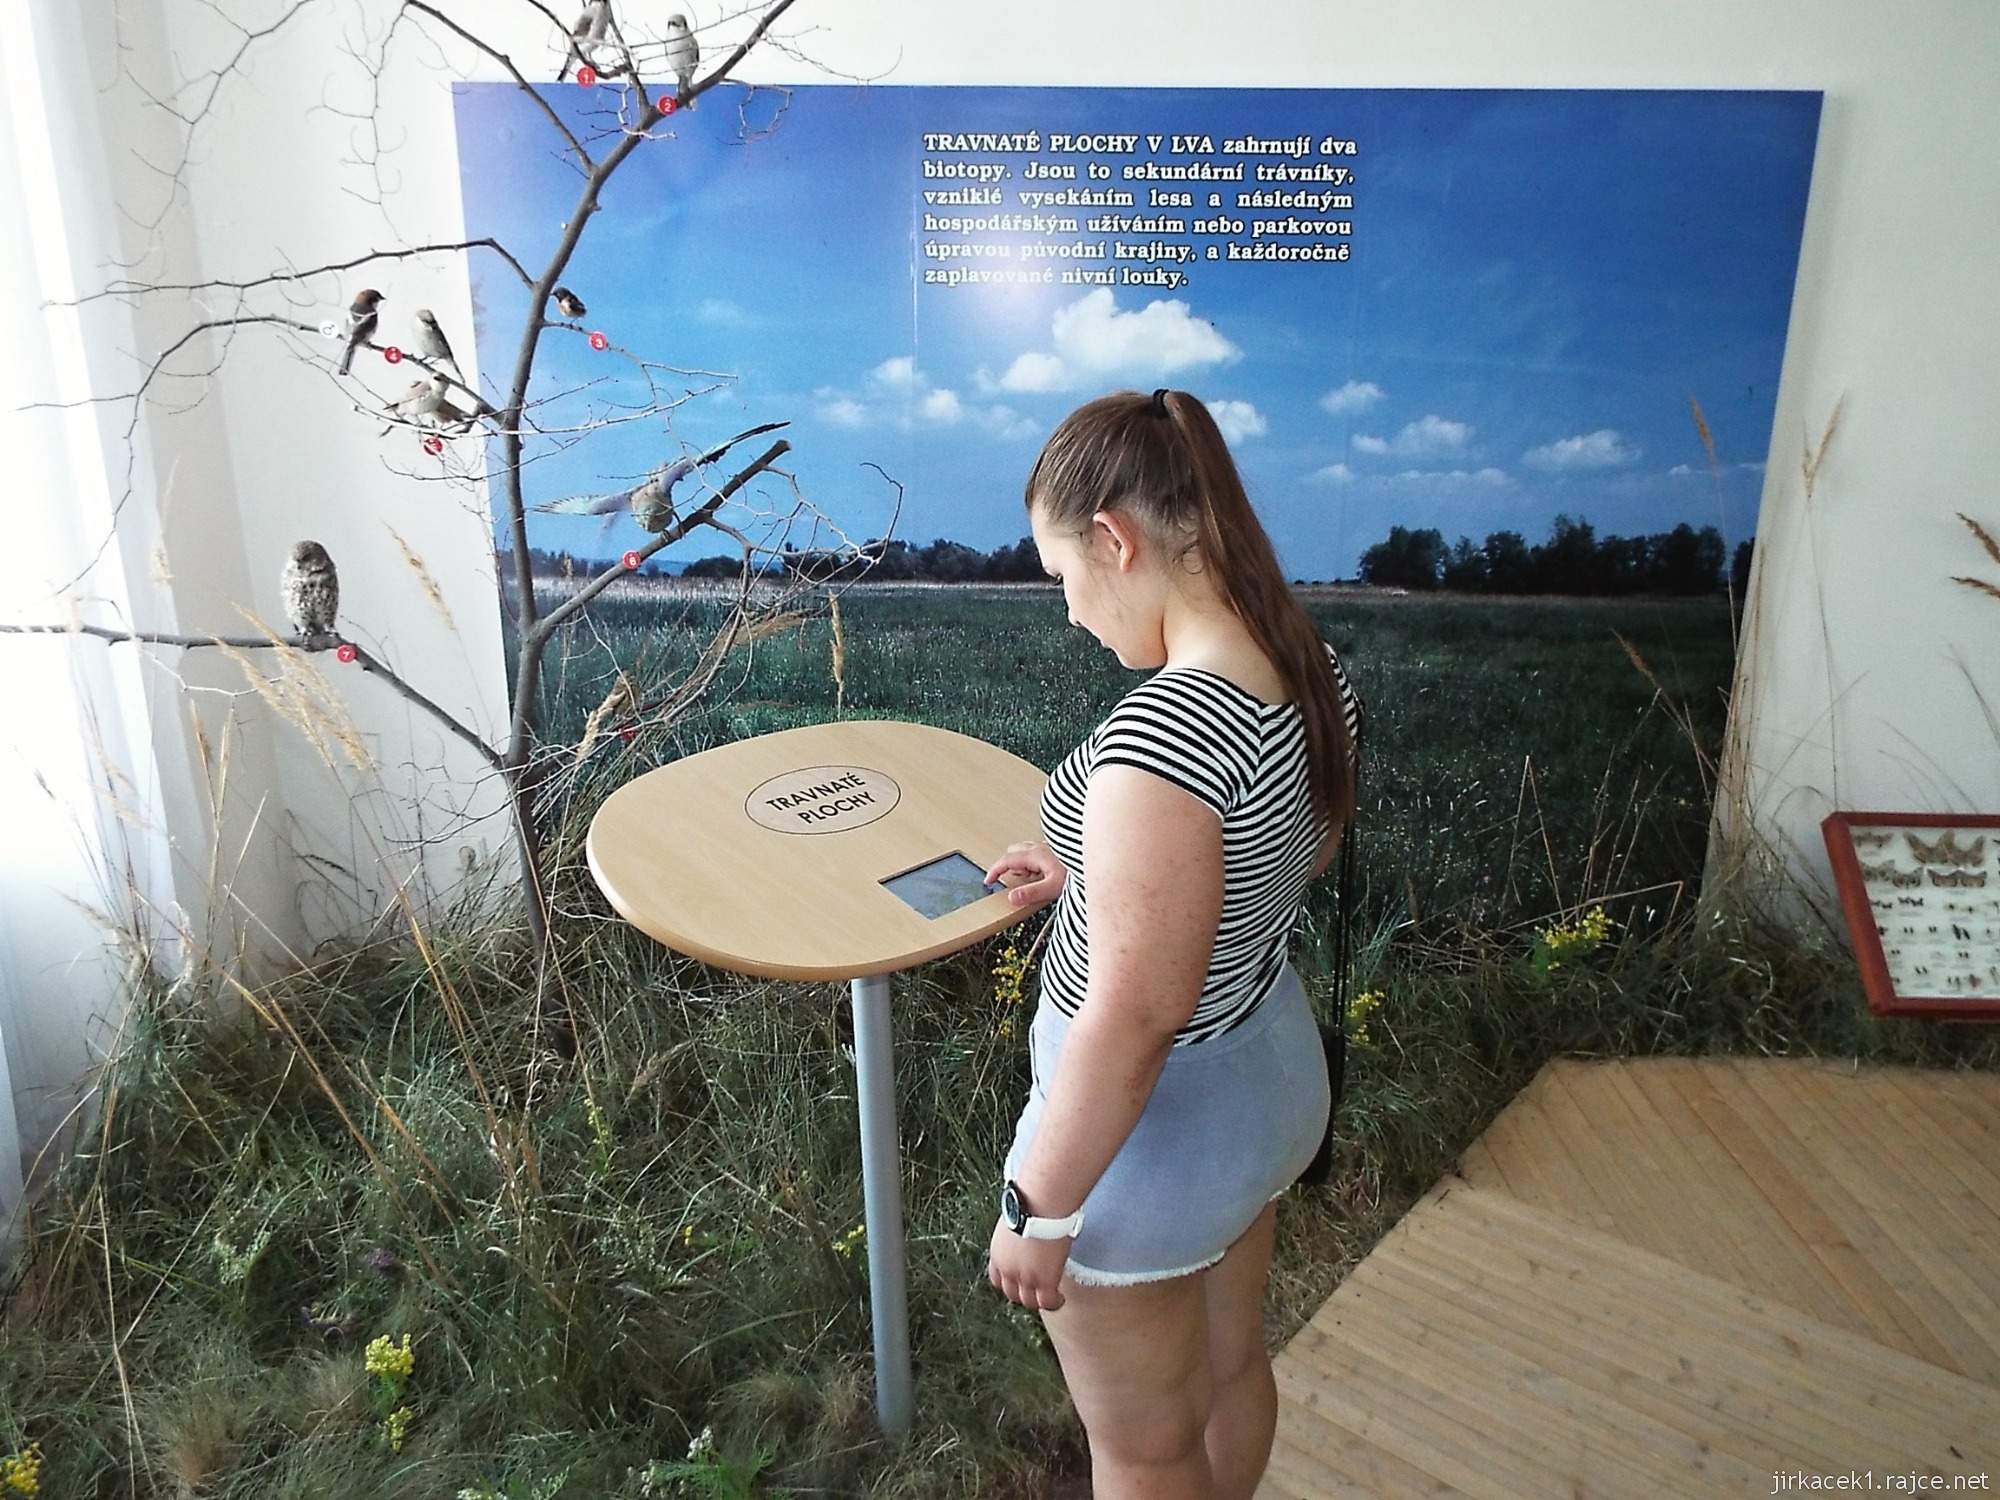 Valtice - zemědělské muzeum 10 - expozice přírody